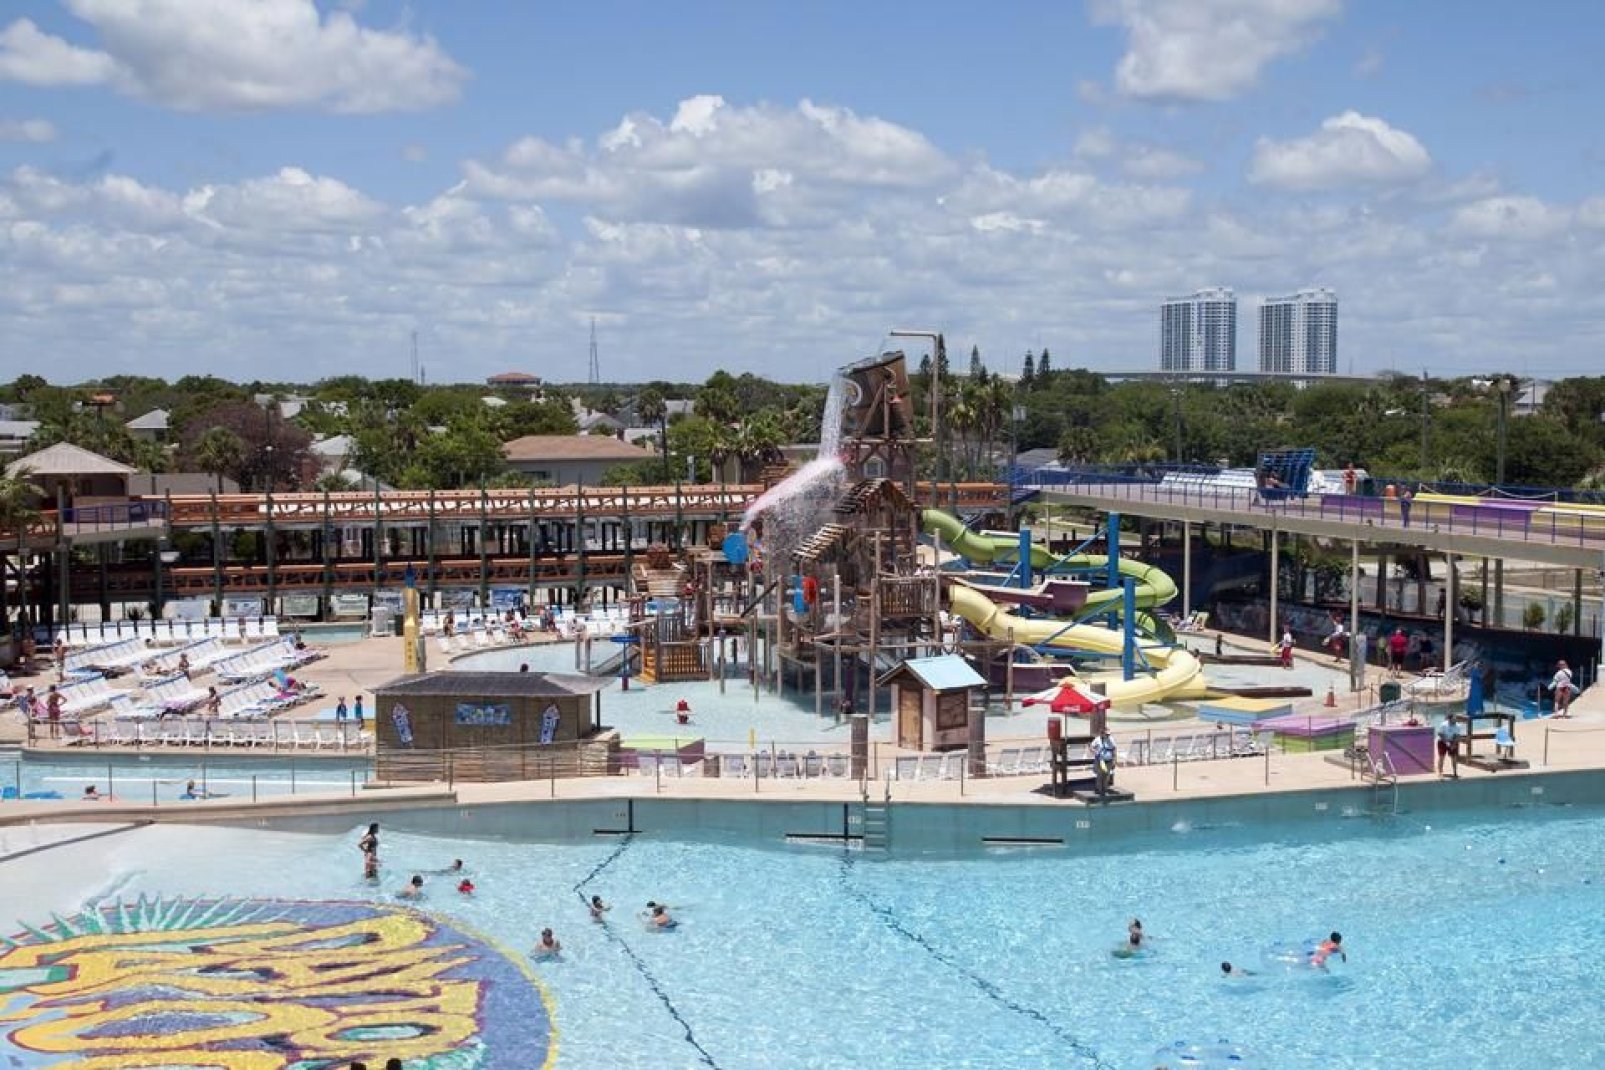 Der Aquapark in Daytona Beach bietet zahlreiche Wasserspiele, Wellenpools, Poolspiele und Wasserrutschen.